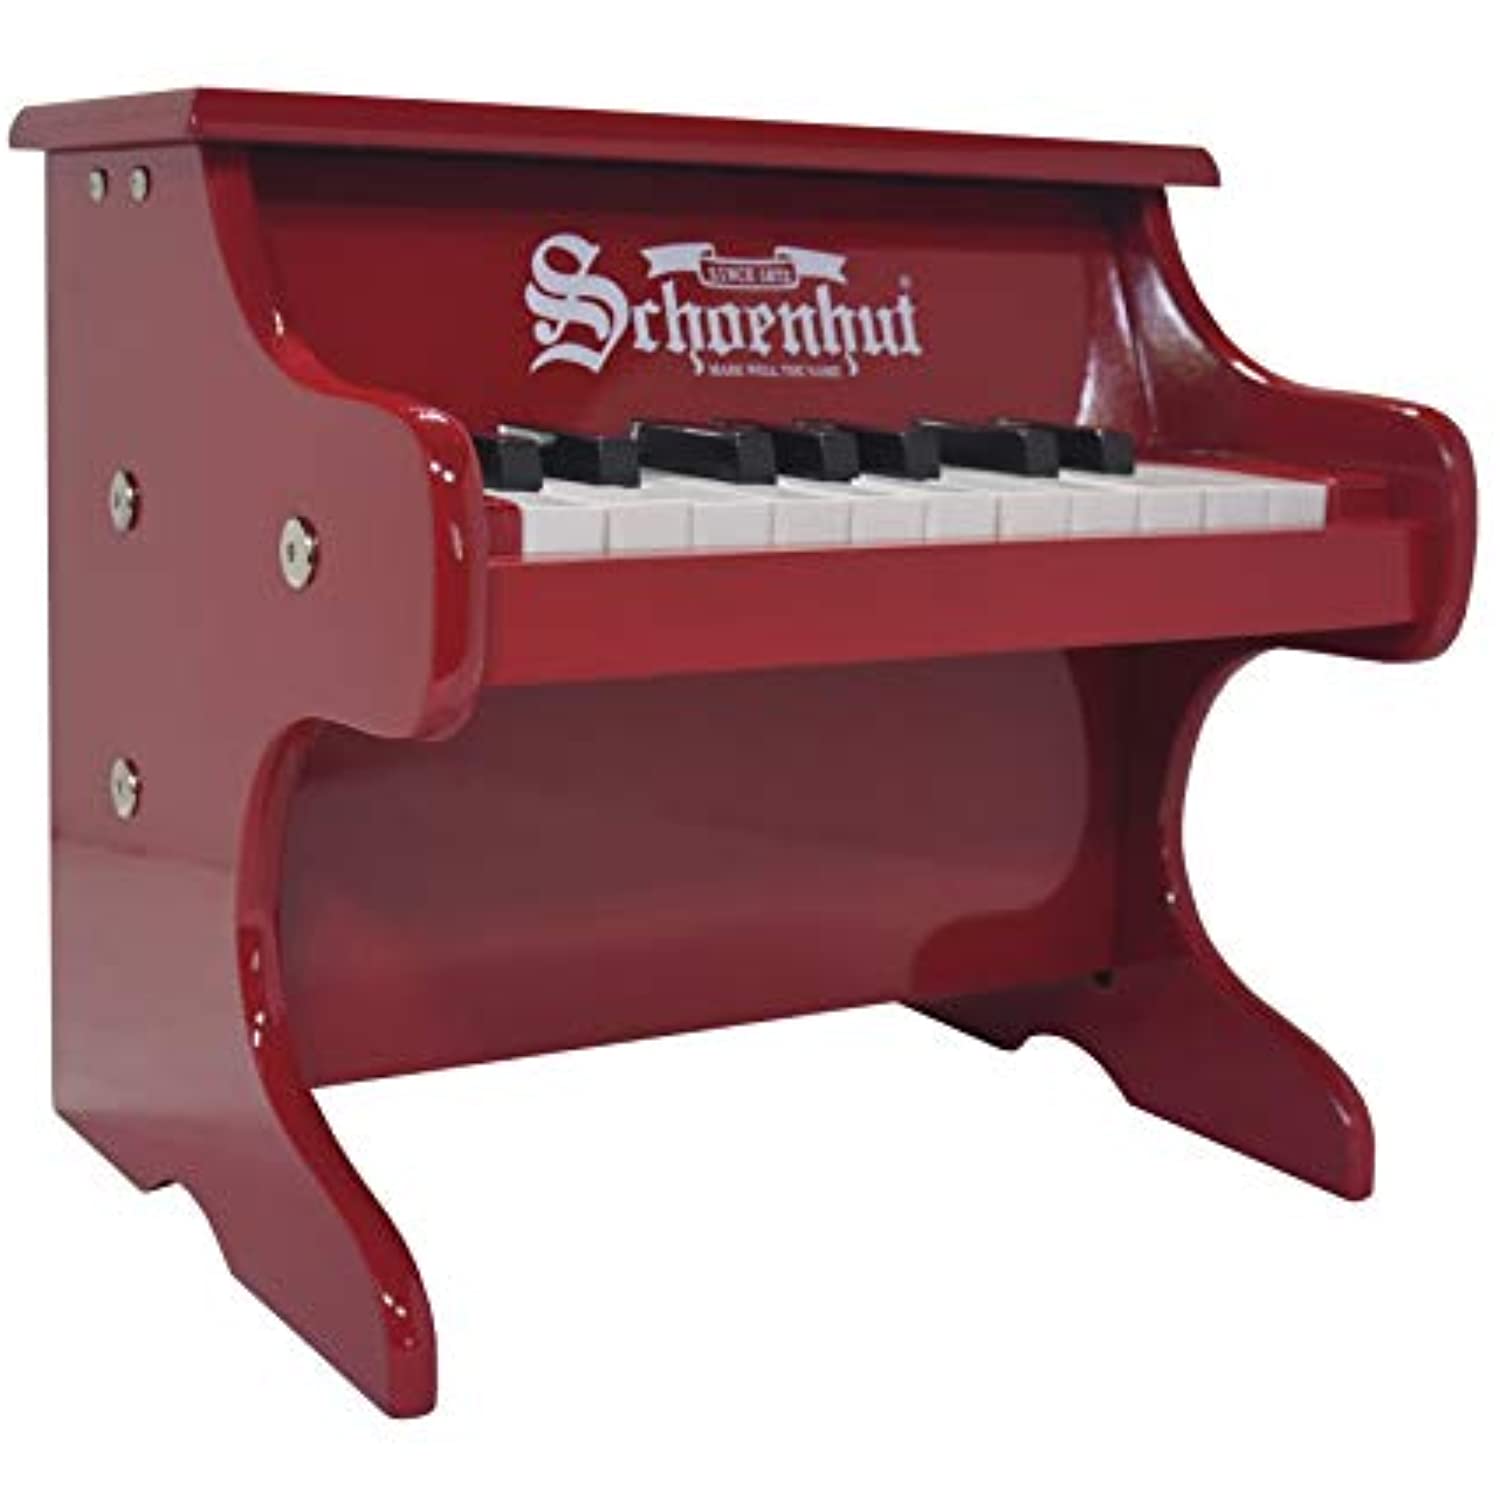 Schoenhut 1822R - 18 Key My First Piano (Red)